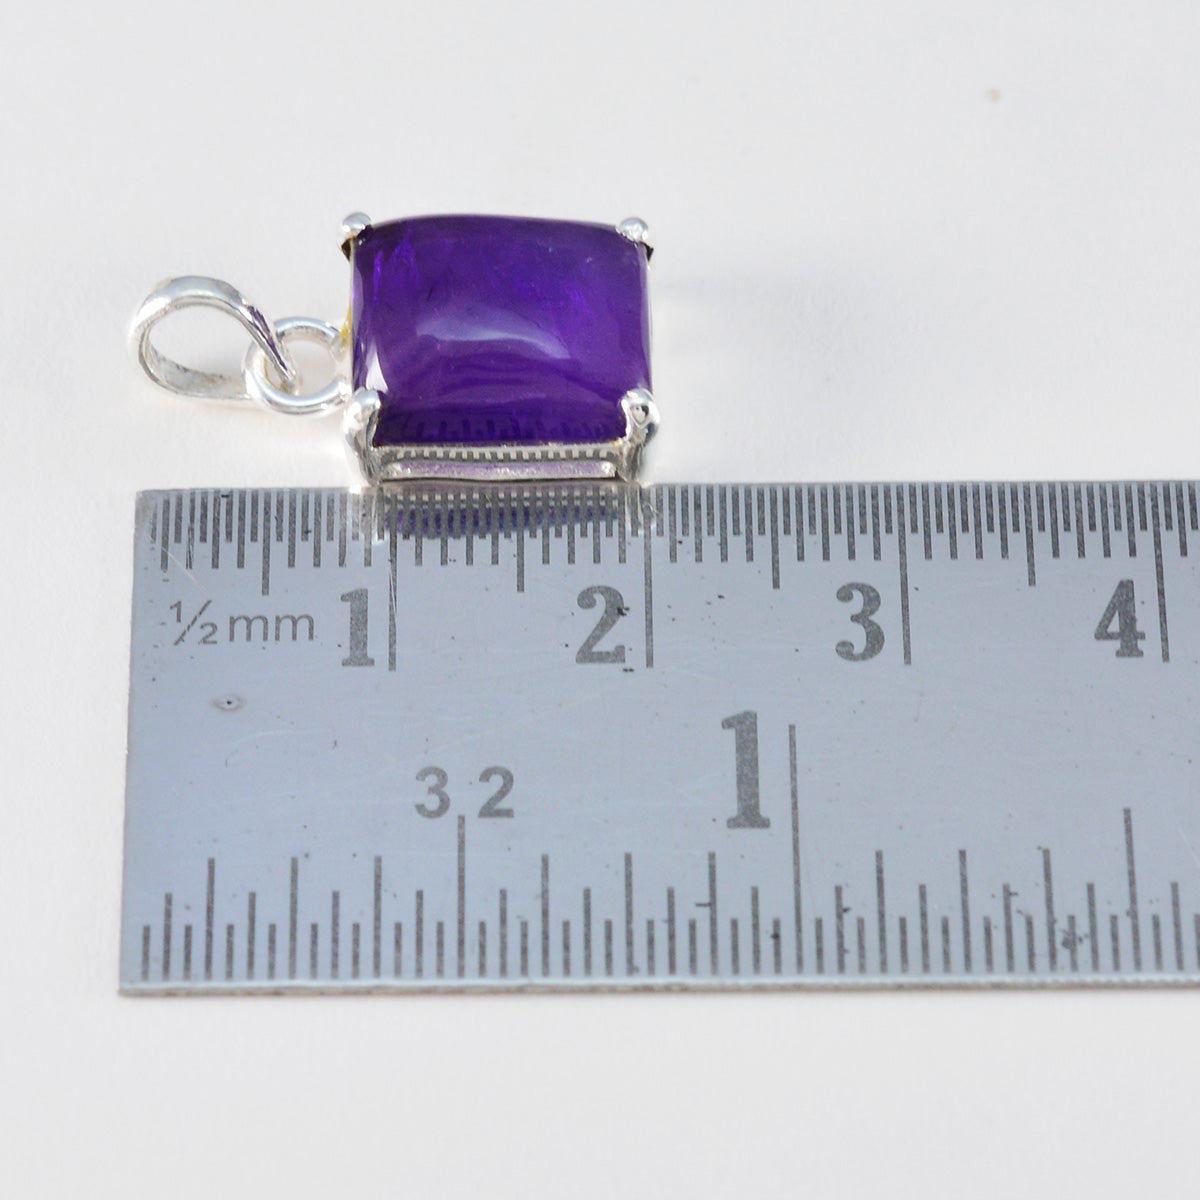 Riyo magnifiques pierres précieuses octogone cabochon violet améthyste pendentif en argent massif cadeau pour le vendredi saint